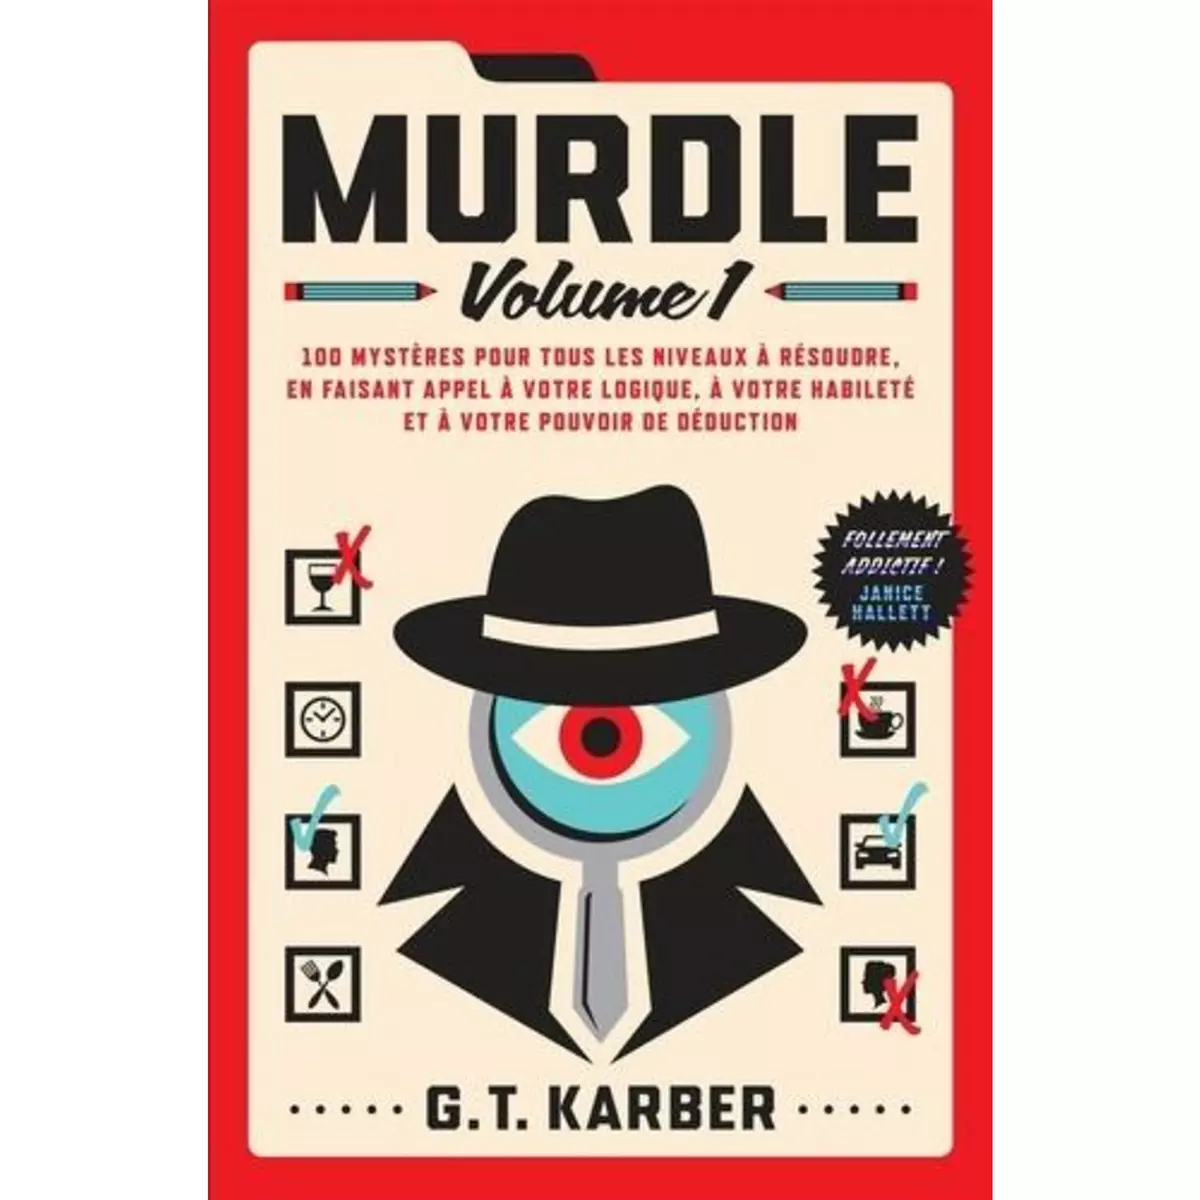  MURDLE. VOLUME 1, 100 MYSTERES POUR TOUS LES NIVEAUX A RESOUDRE, Karber G. T.